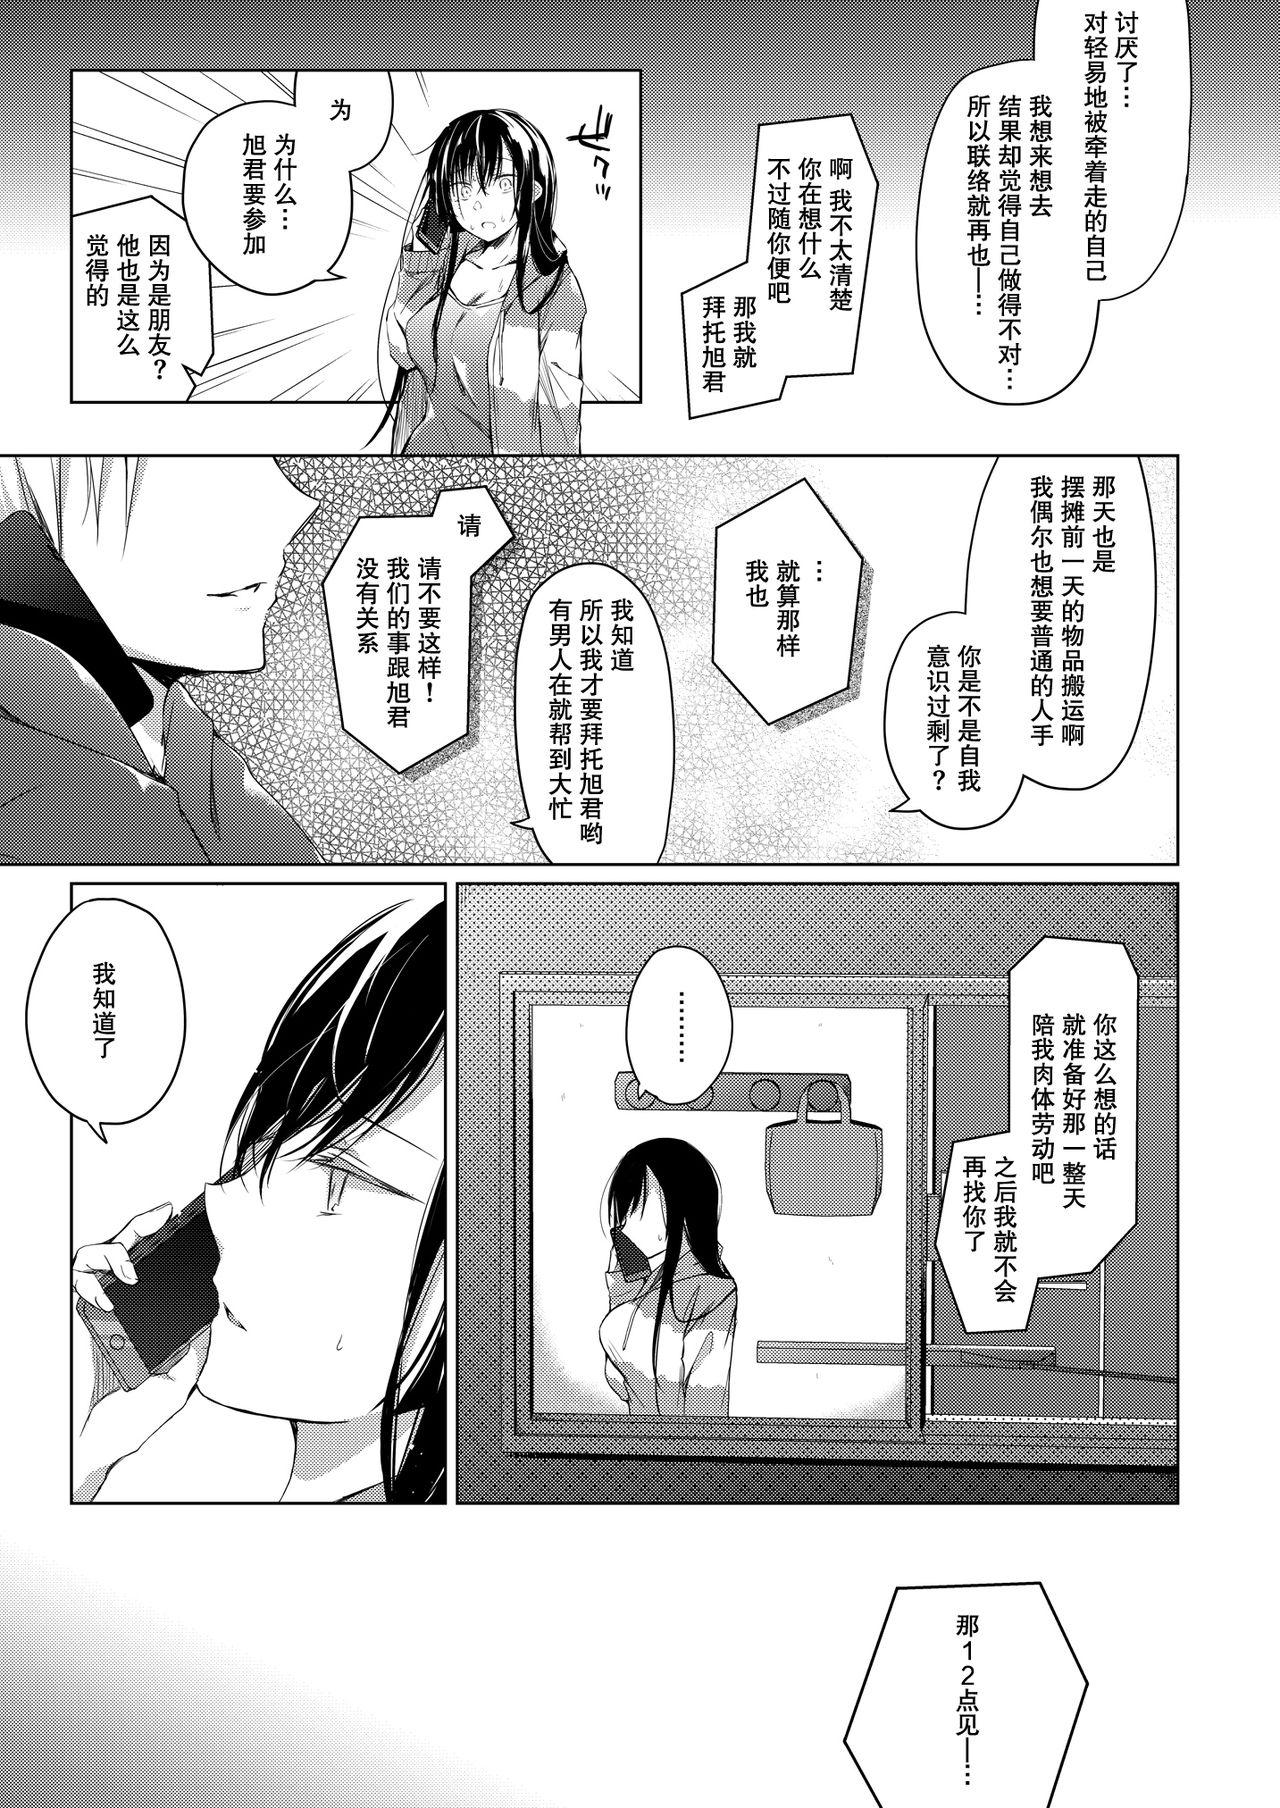 Spycam Ero Doujin Sakka no Boku no Kanojo wa Uwaki nante Shinai. 4 - She will never let me down. - Original Tinder - Page 12